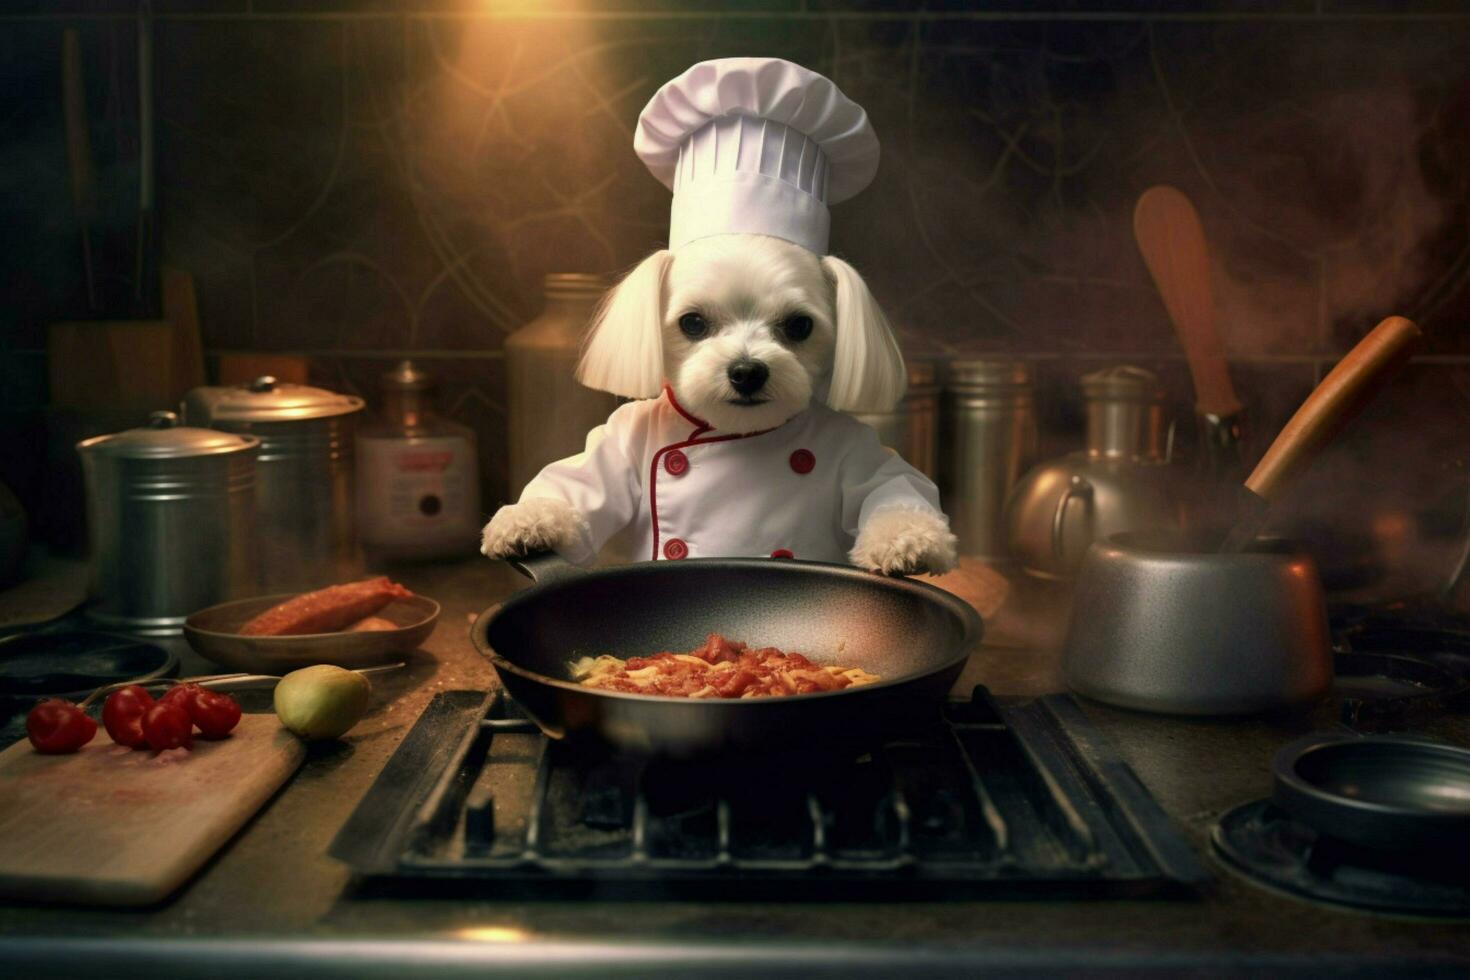 capocuoco cane cucinando foto